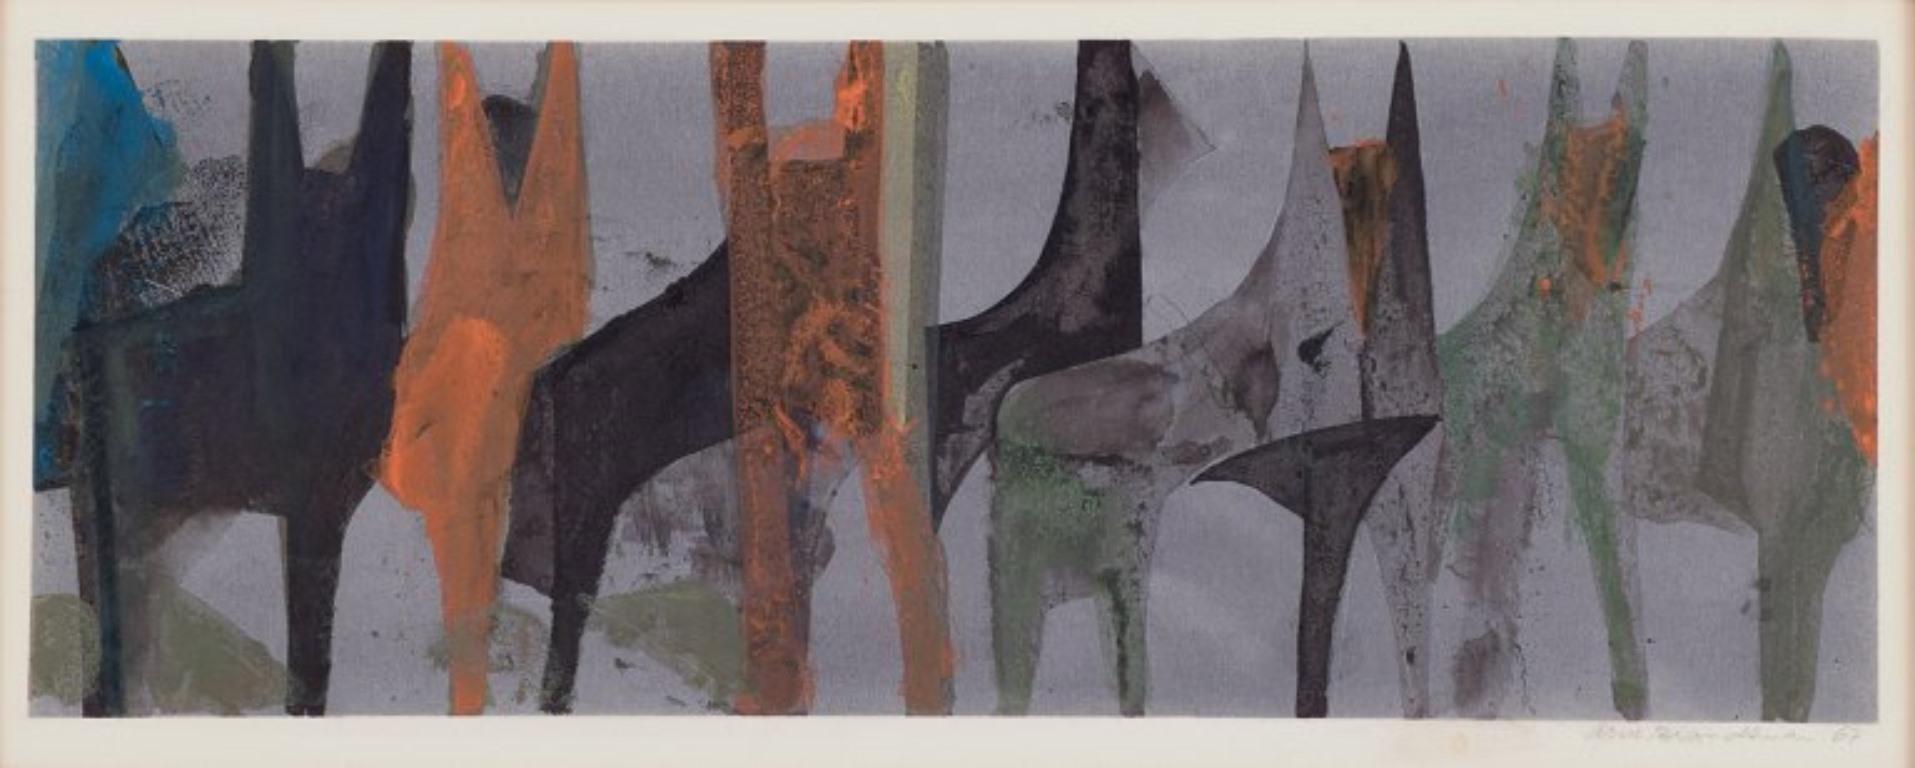 Arne Brandtman (1925-2010), schwedischer Künstler. 
Farbdruck auf Papier.
Abstrakte Zusammensetzung.
Handsigniert mit Bleistift und datiert 67.
In perfektem Zustand.
Abmessungen des Bildes: 43,5 cm x 6,5 cm.
Gesamtabmessungen: 46,0 cm x 20,0 cm.

